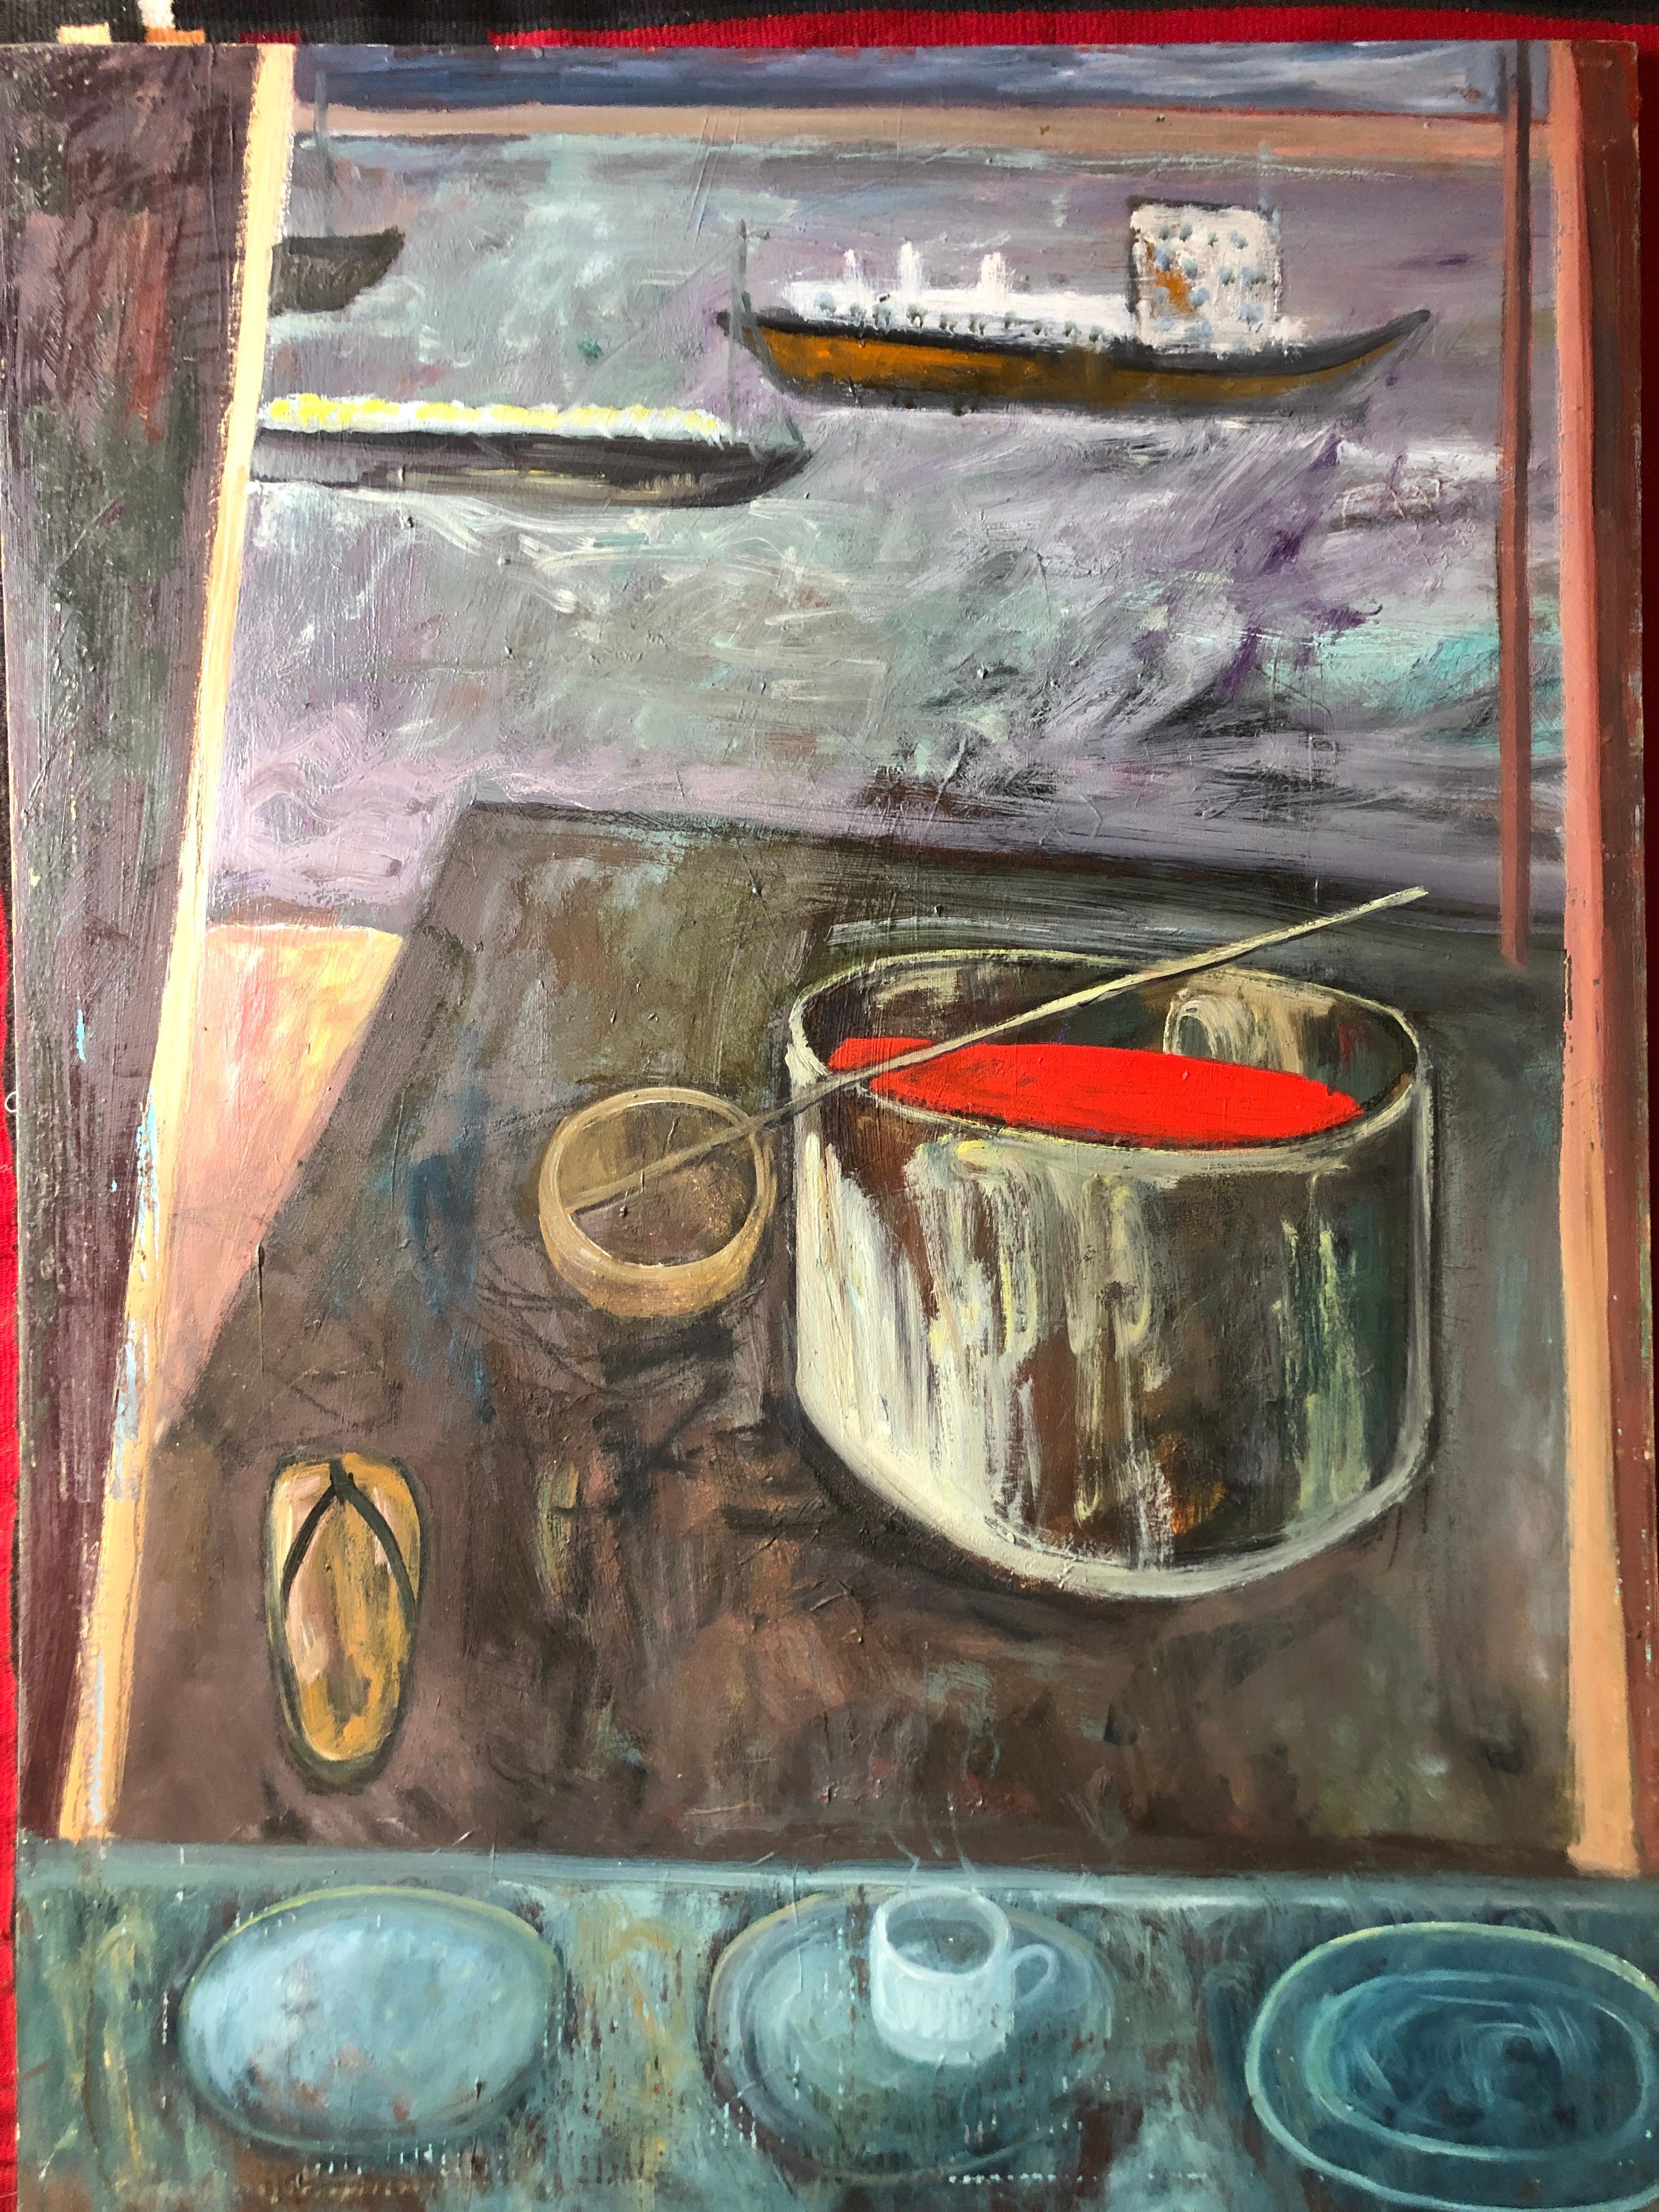 Grand artiste de la scène de paysage de la baie de San Francisco « Two Ships Passing » (Deux navires traversant la baie) - Gris Still-Life Painting par Trung Quoc Tran